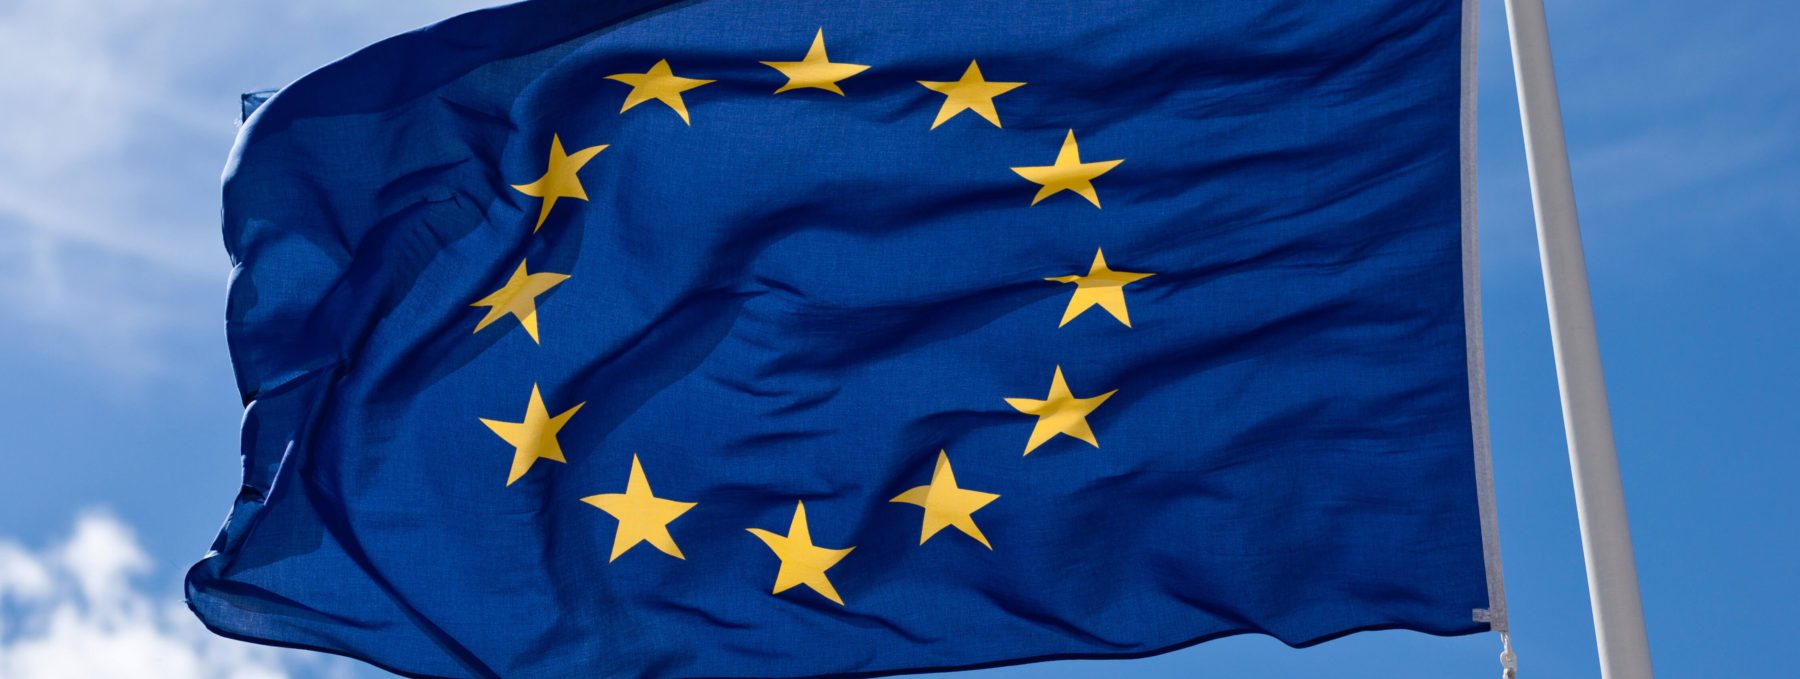 Europe EU flag referendum